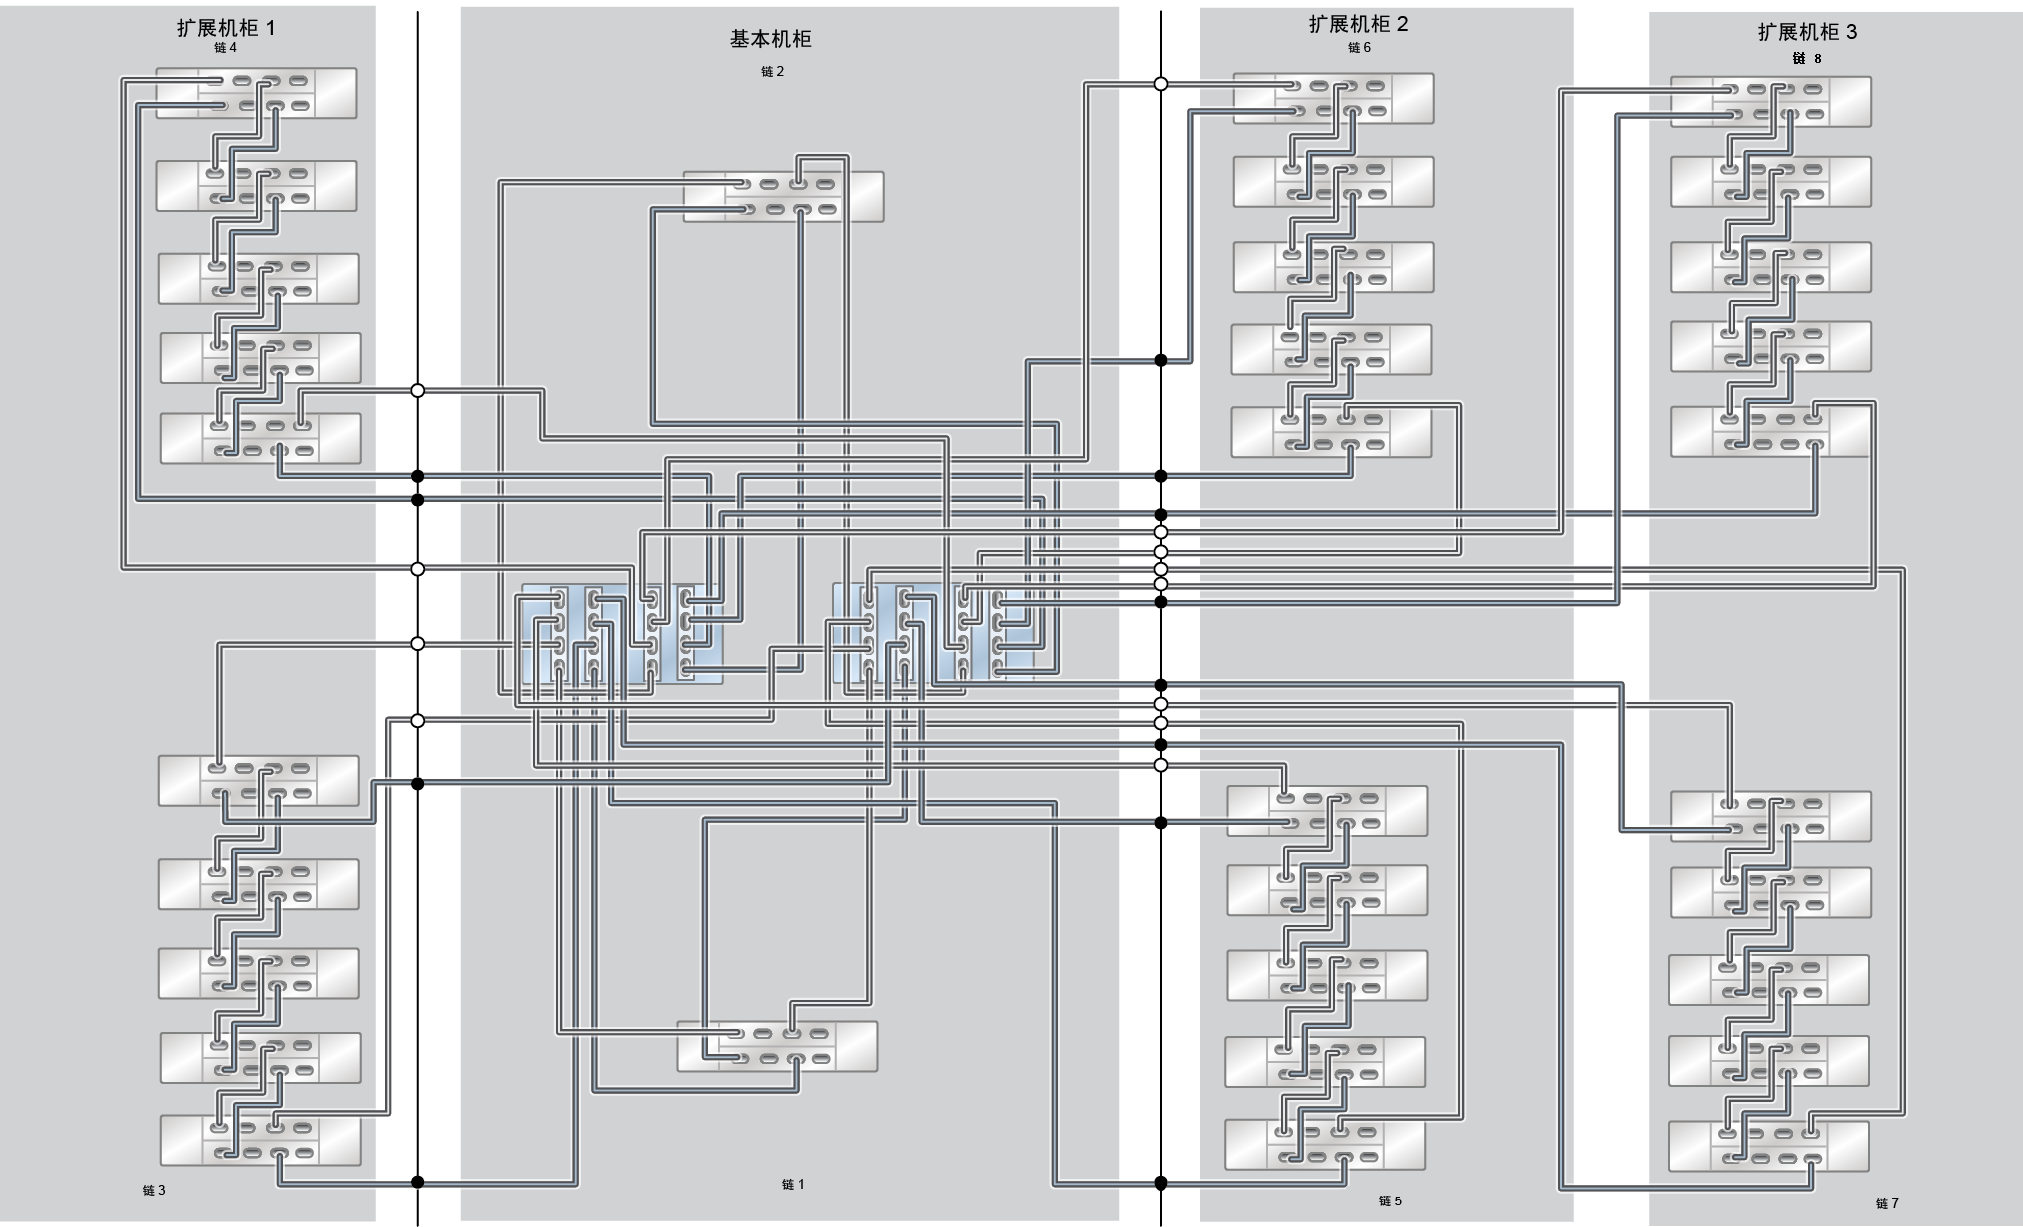 image:此图显示了具有三个扩展机柜（30 个 DE3-24C 磁盘机框）的 ZS5-4 Racked System 全闪存。